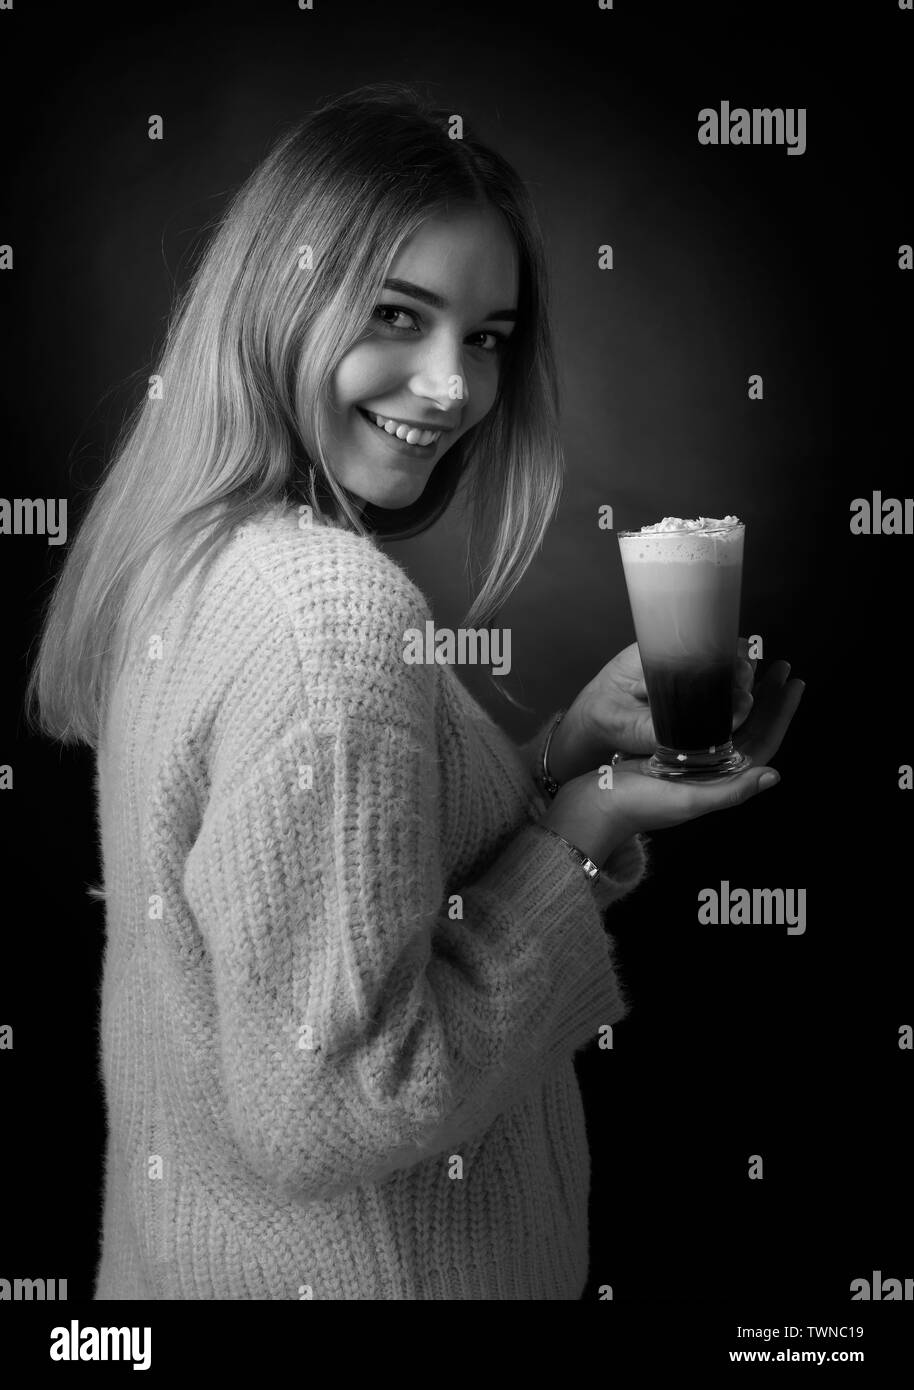 Beautiful smiling girl dans un chandail tenant un cocktail du café avec de la crème. Noir et blanc. Banque D'Images